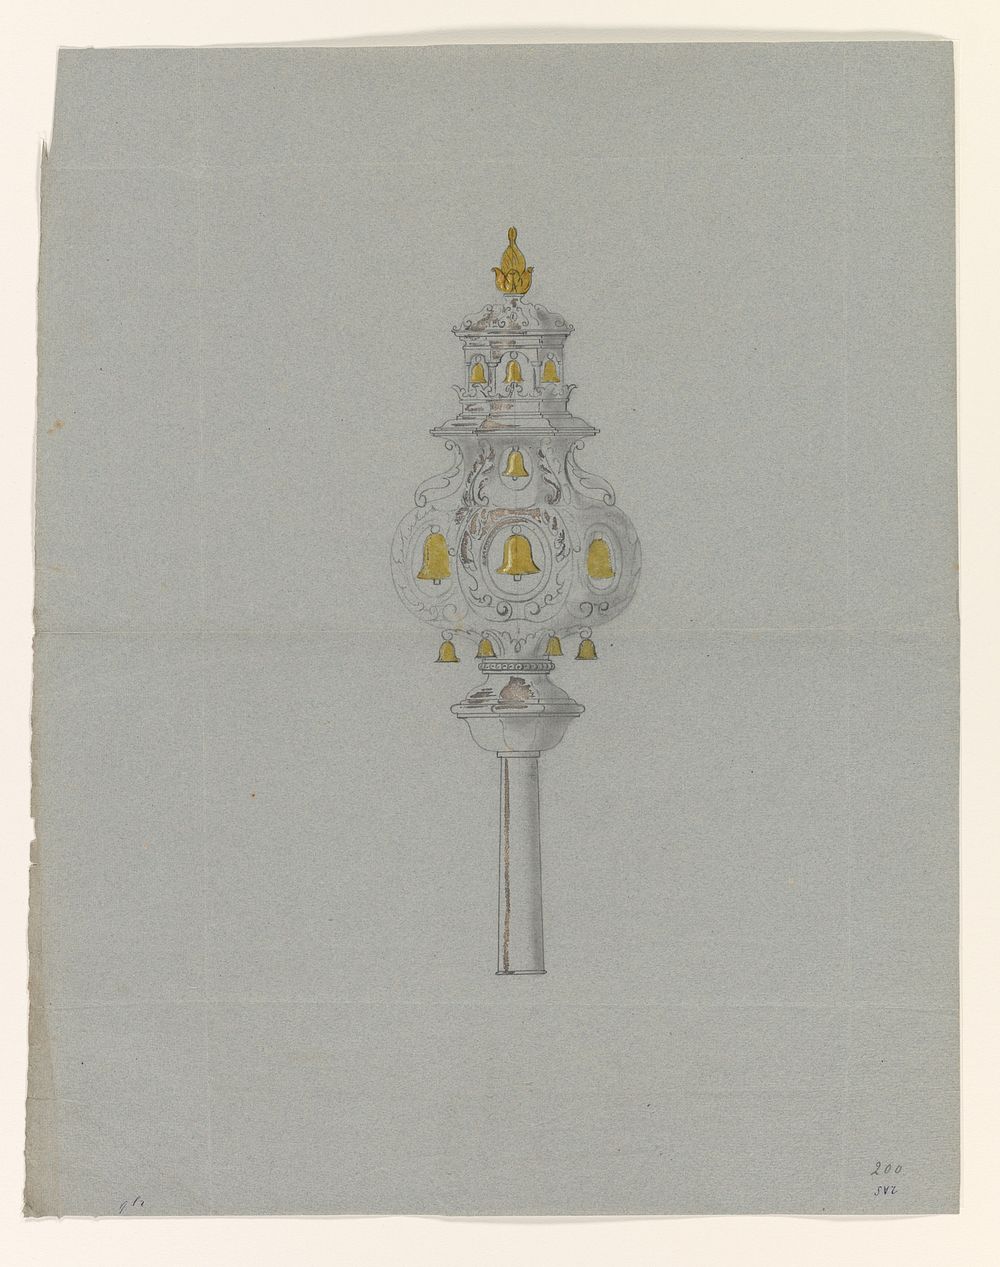 Ontwerp voor een scepter met bellen (c. 1800 - c. 1899) by J H Hellweg